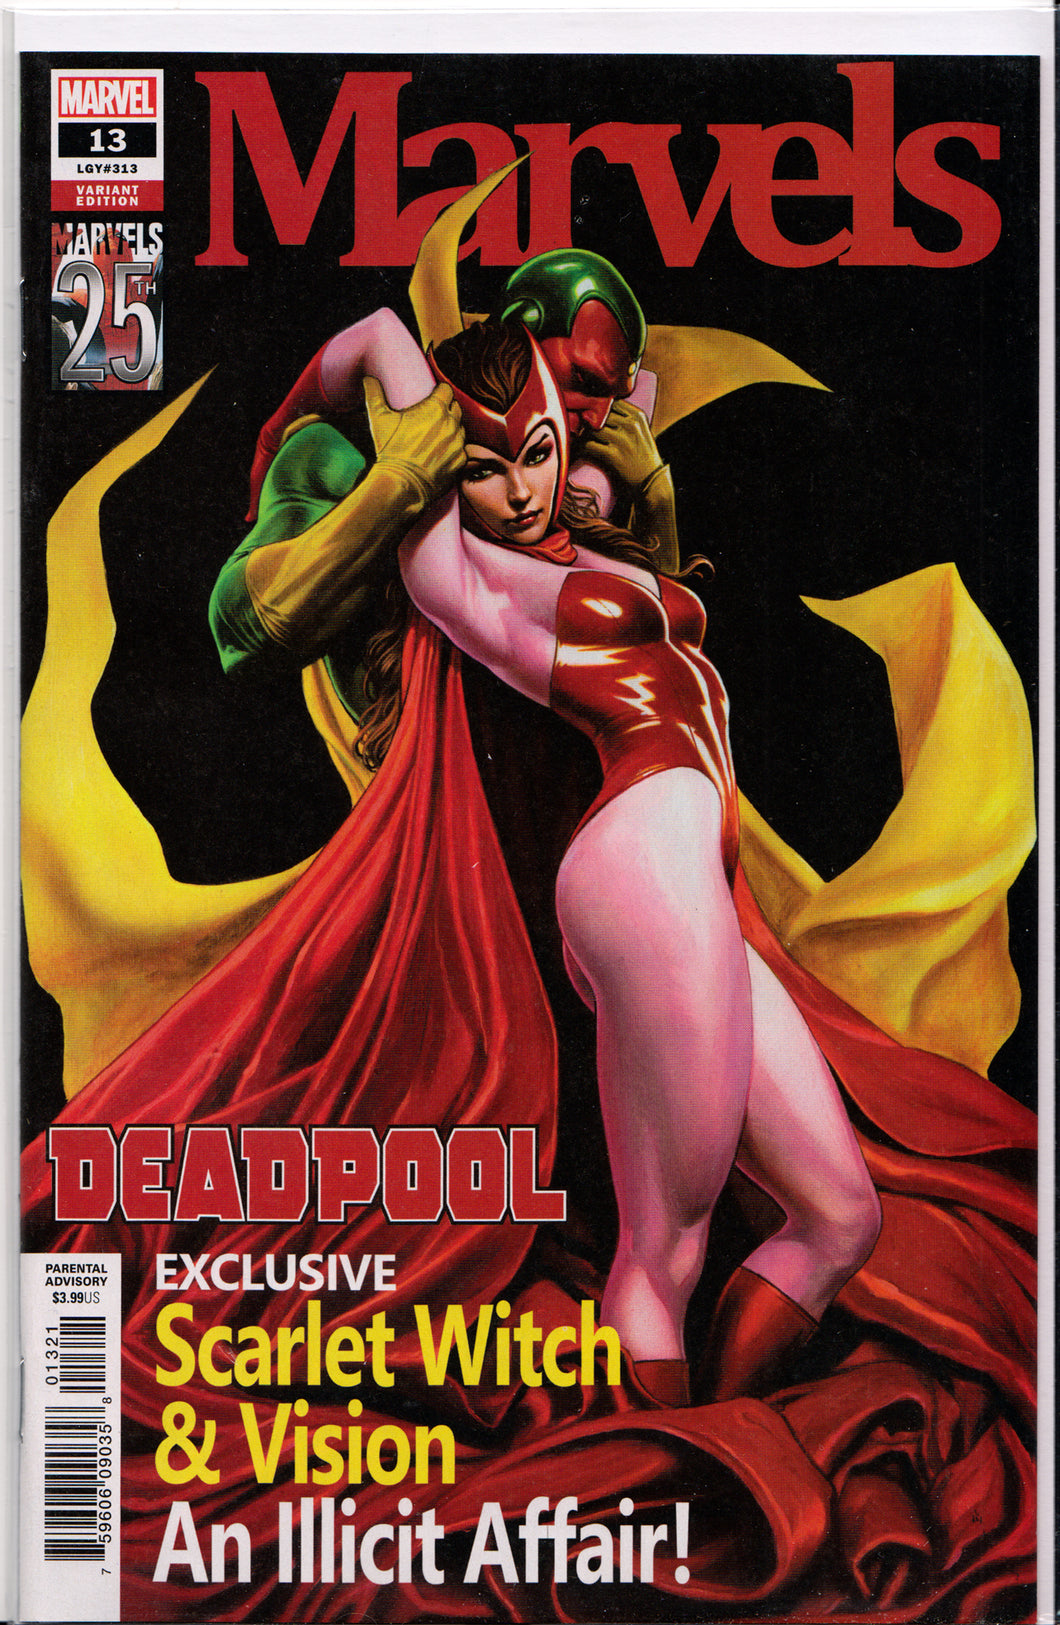 DEADPOOL #13 (ADI GRANOV MARVELS TRIBUTE VARIANT) ~ Marvel Comics